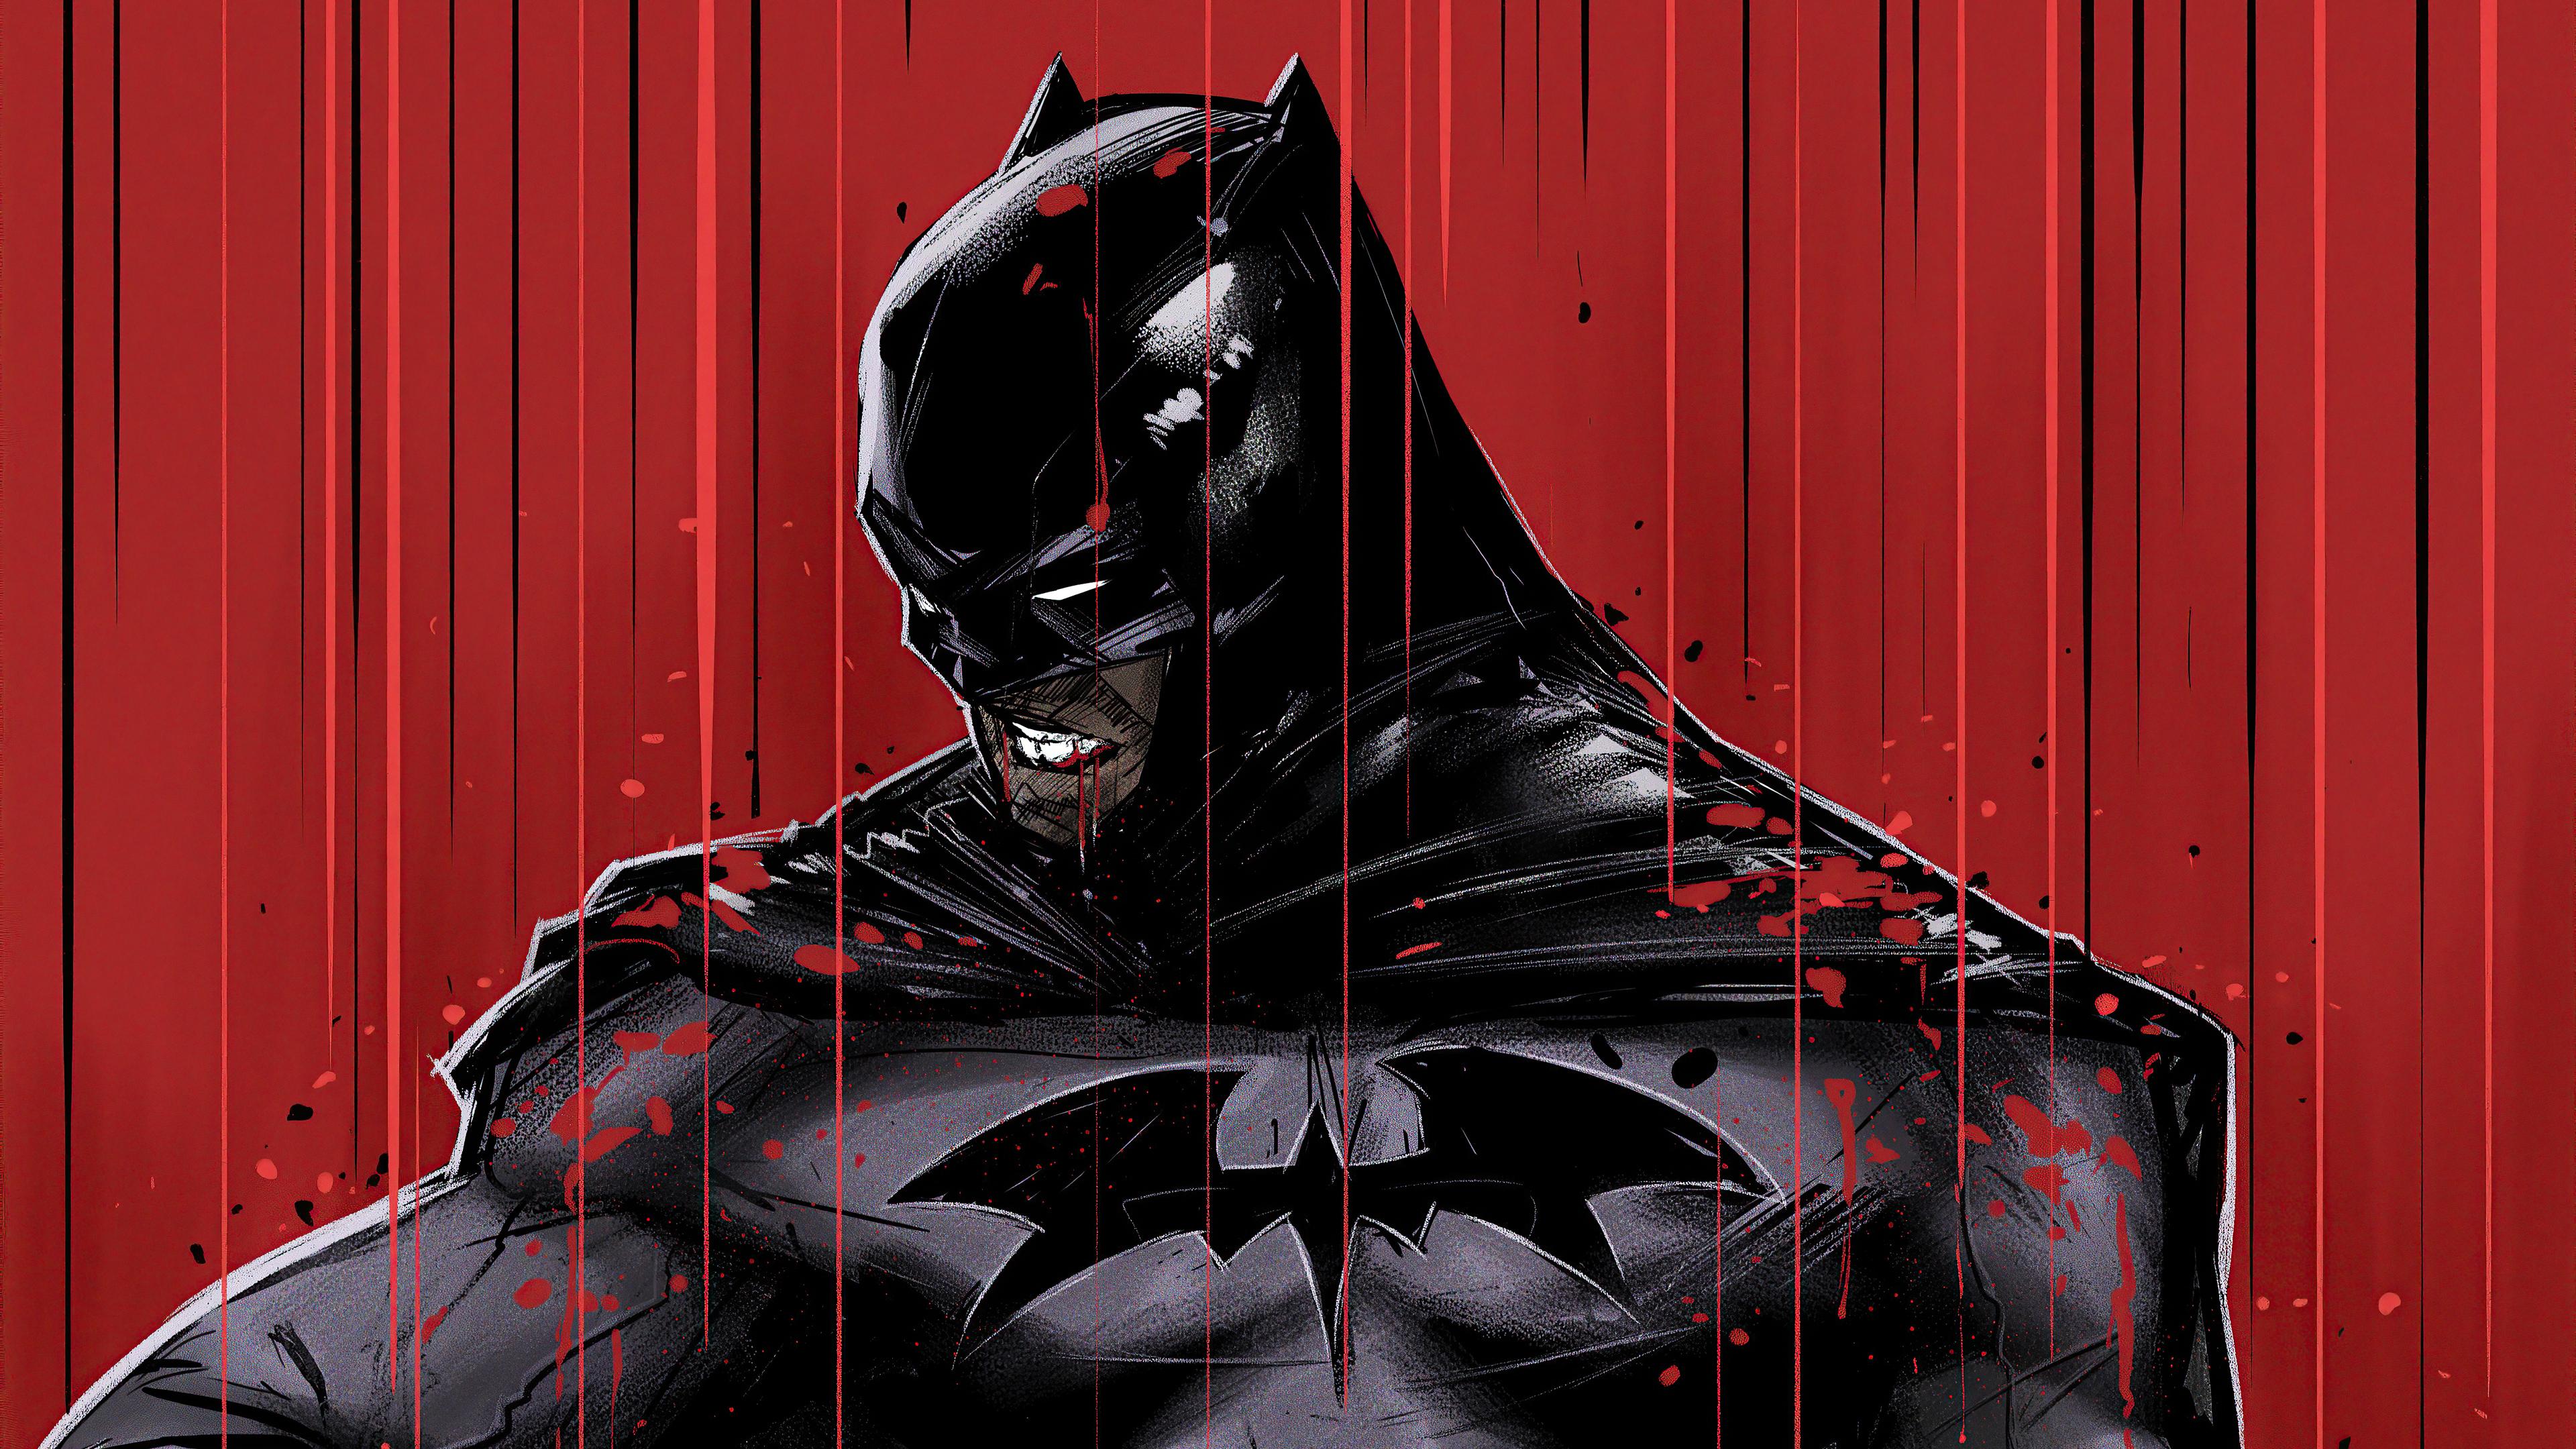 3840 x 2160 · jpeg - Batman 4k Ultra HD Wallpaper | Background Image | 3840x2160 | ID ...